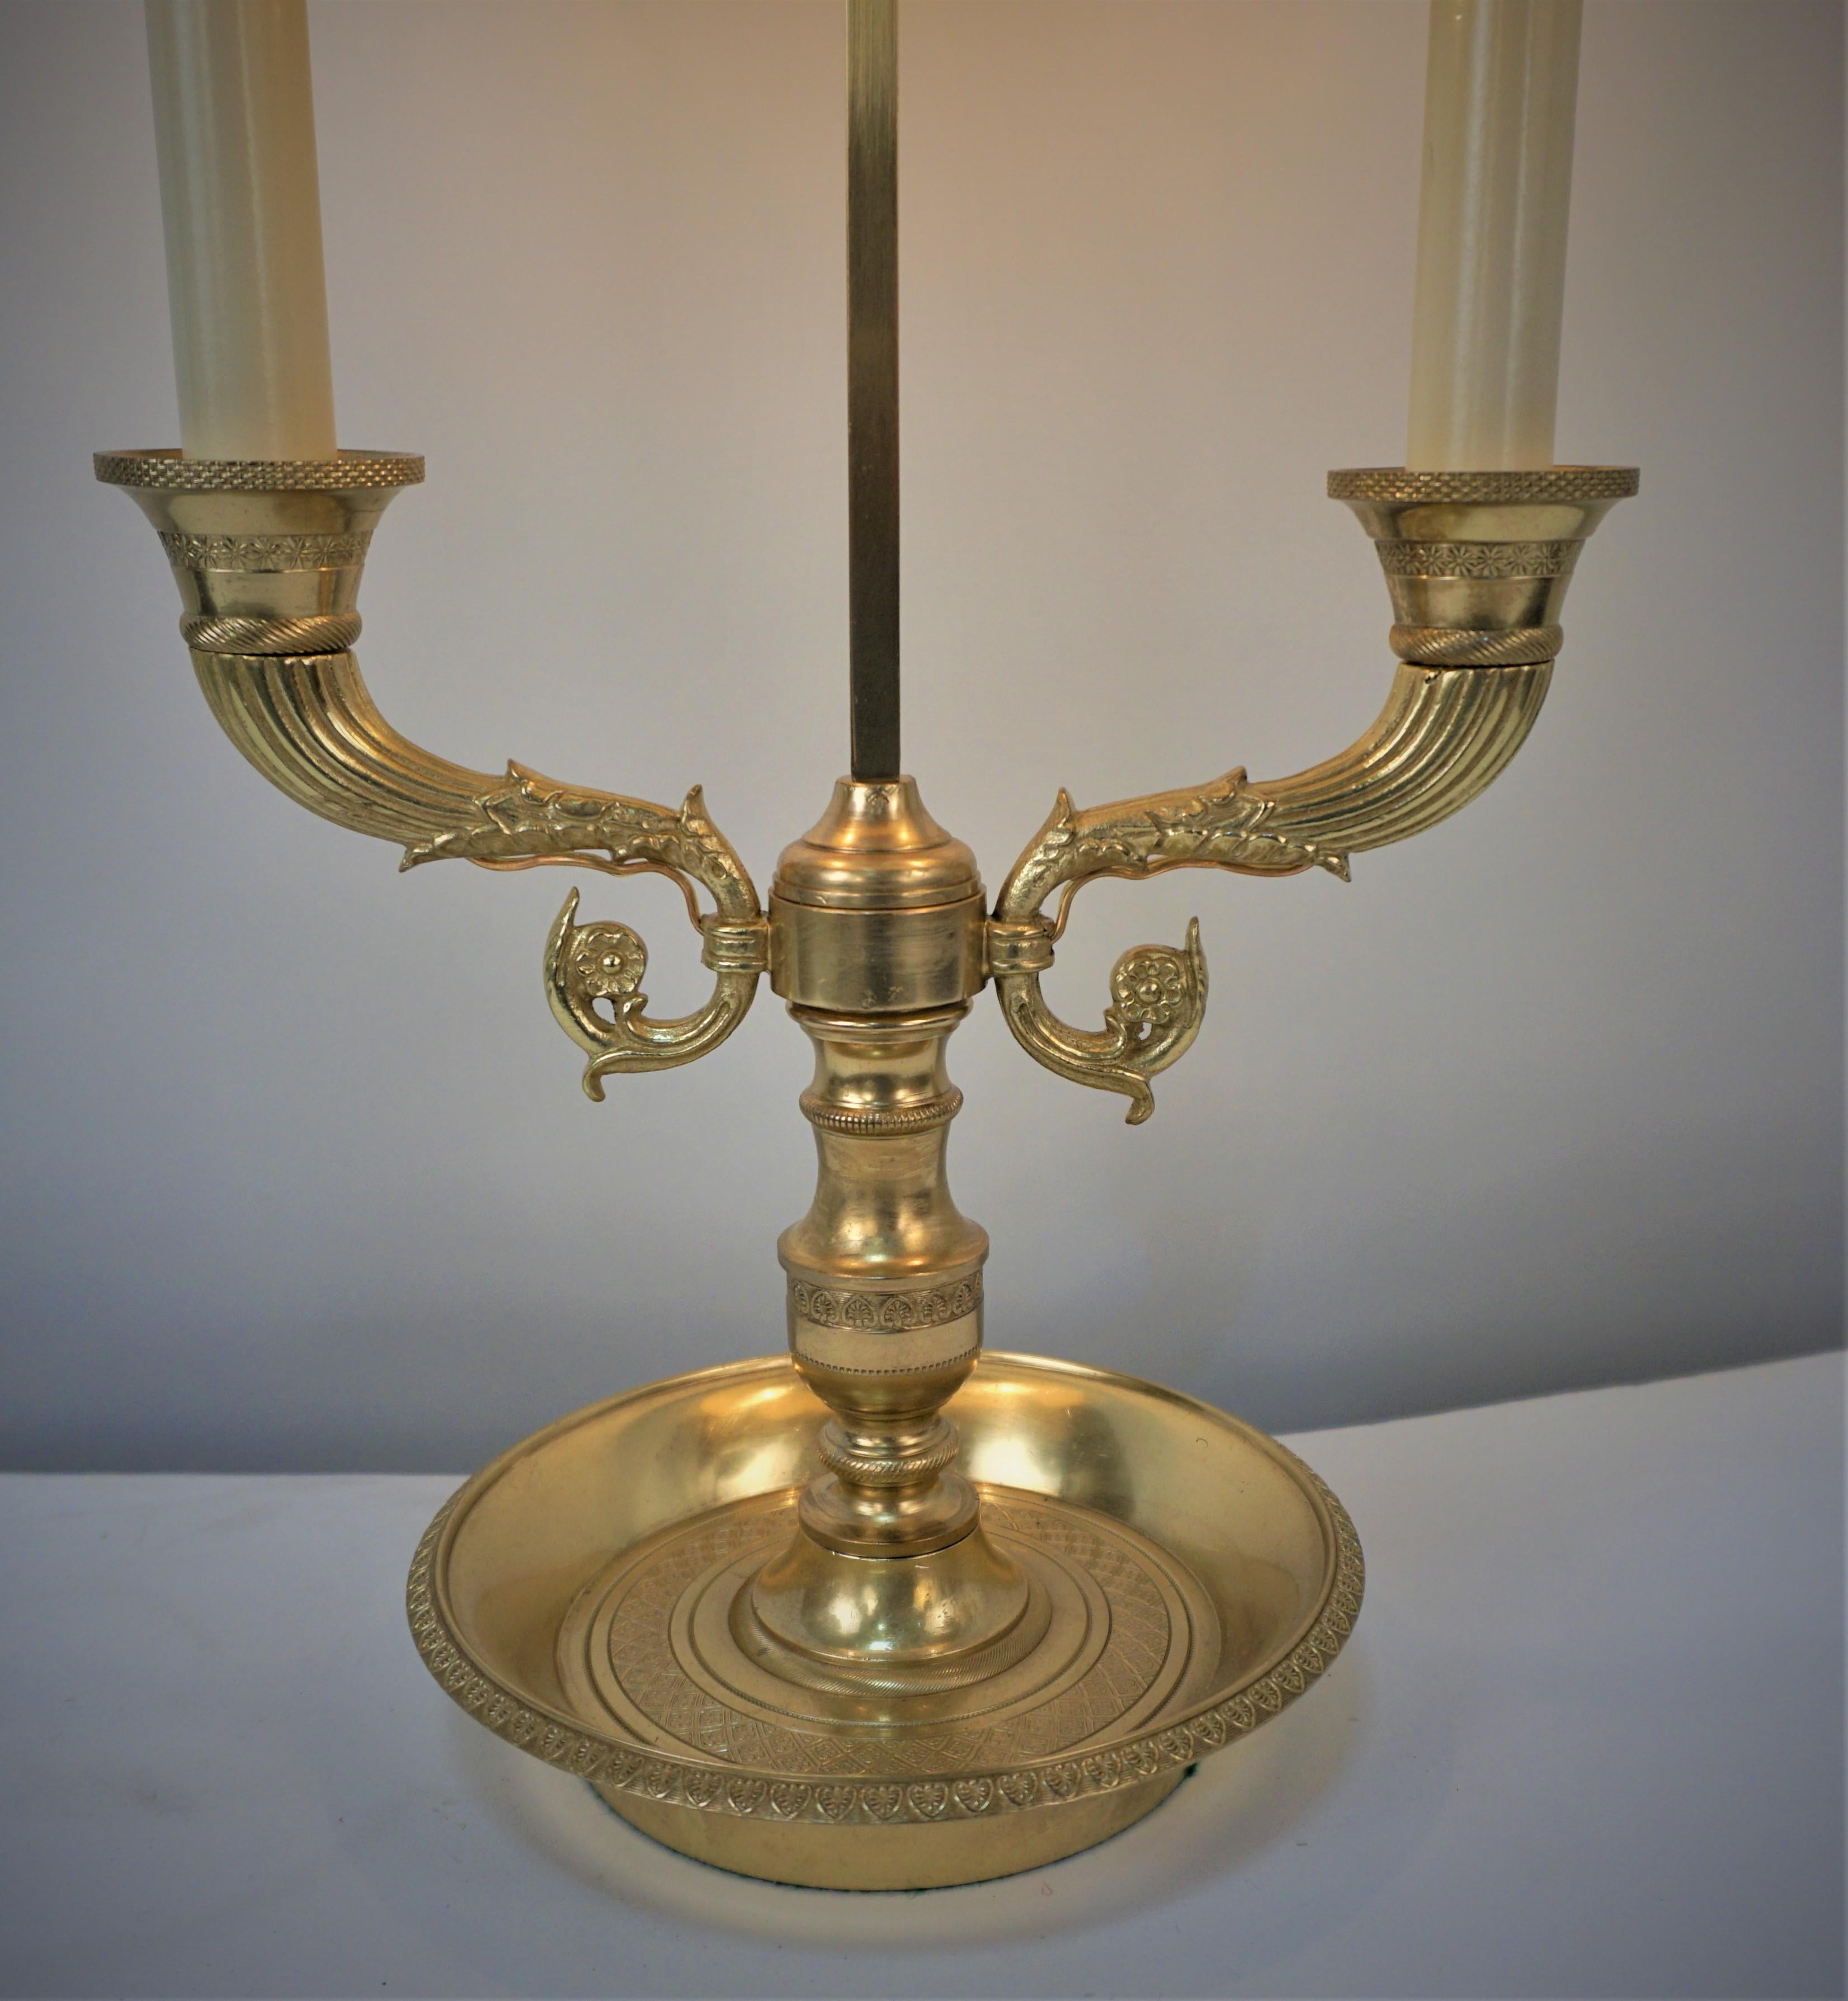 Diese im Frankreich des frühen 20. Jahrhunderts gefertigte Tischlampe hat einen schönen Kandelabersockel aus Bronze. Die Lampe wurde professionell elektrifiziert und restauriert und hat zwei Lichter.